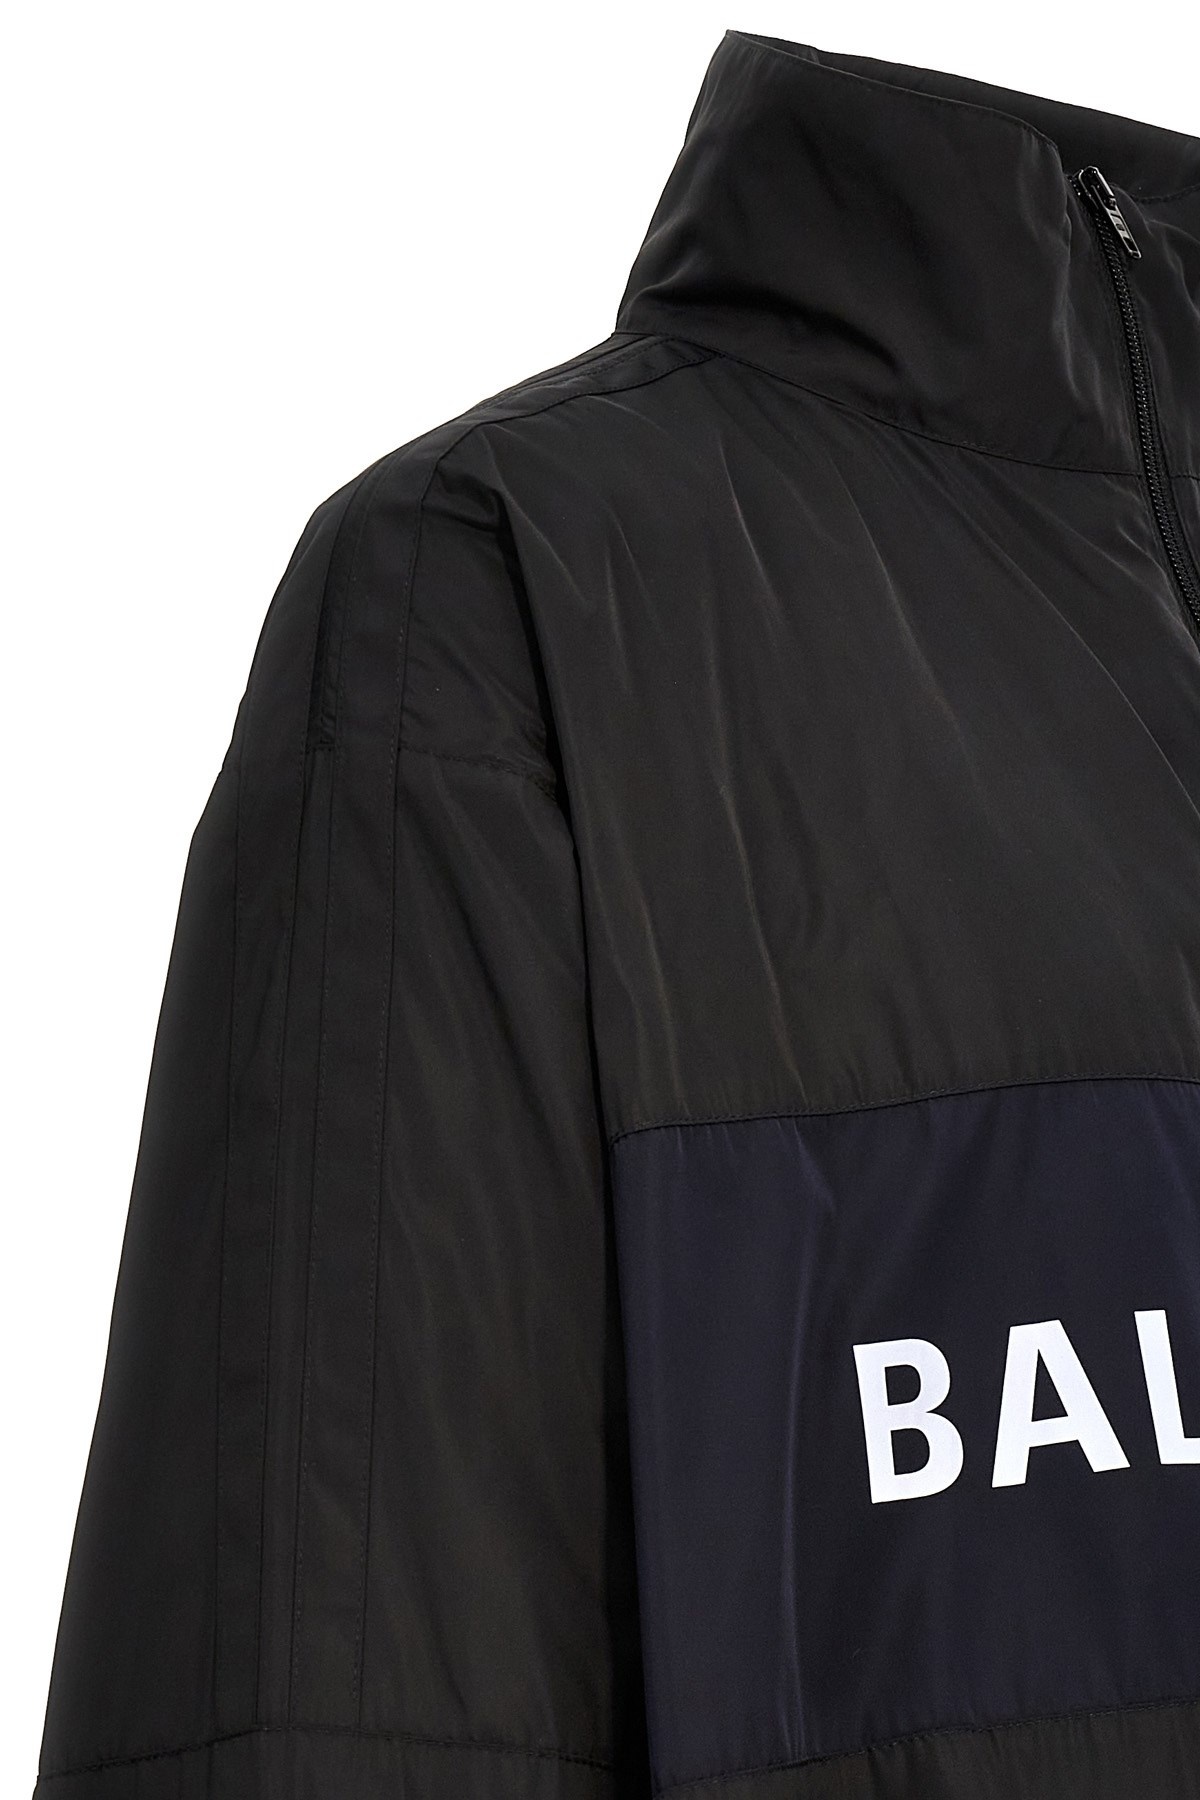 'Balenciaga' jacket - 6